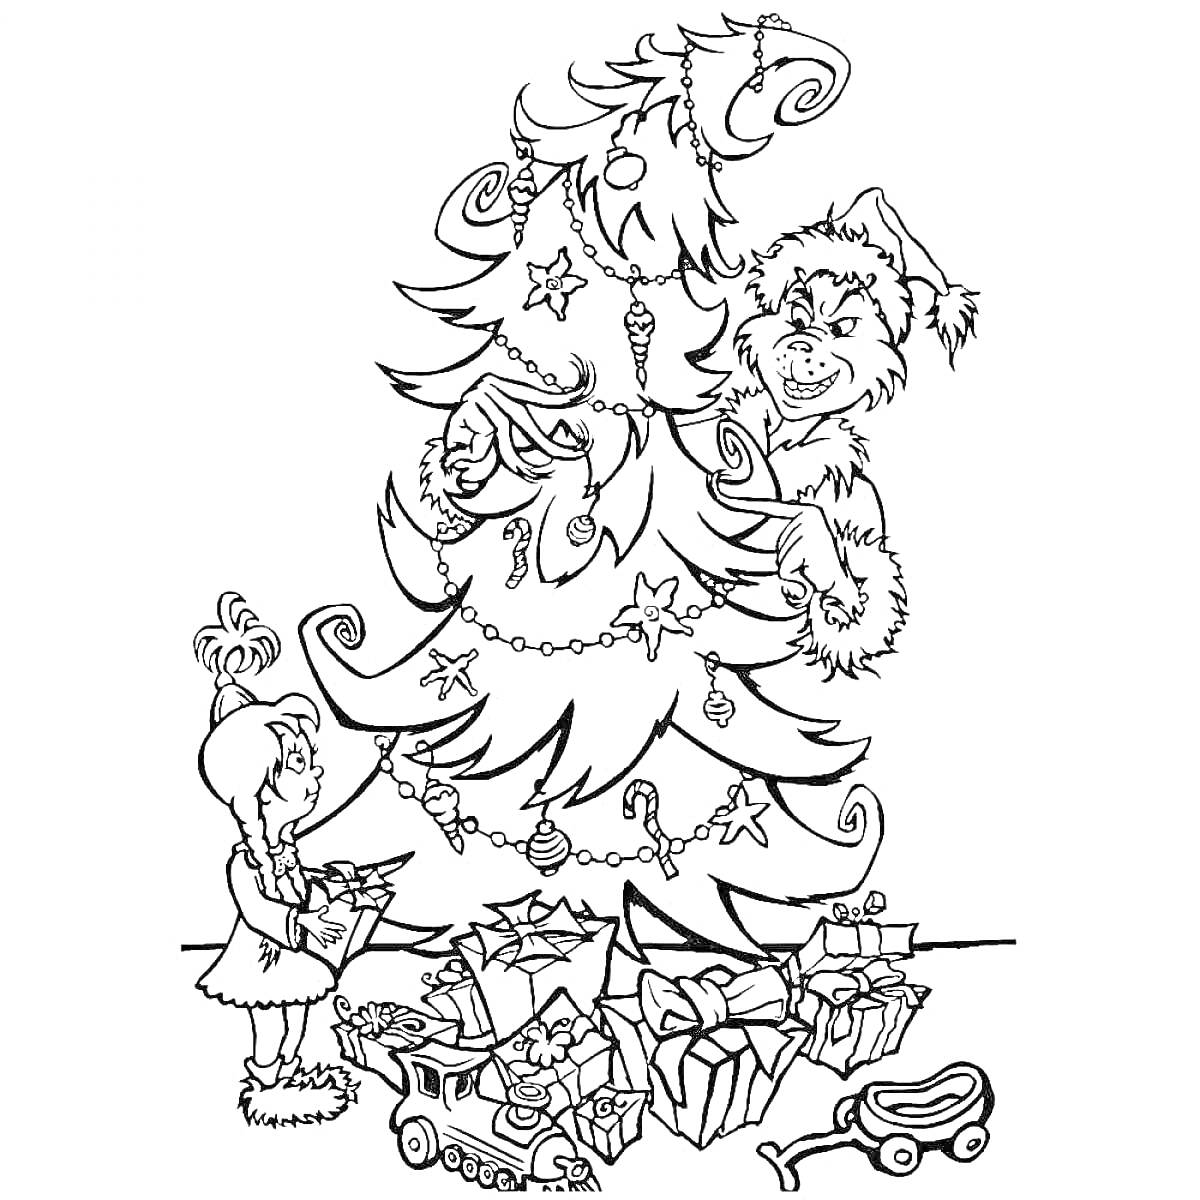 Девочка с подарками, Гринч прячется за рождественской елкой, игрушки, гирлянды, новогодние украшения, санки